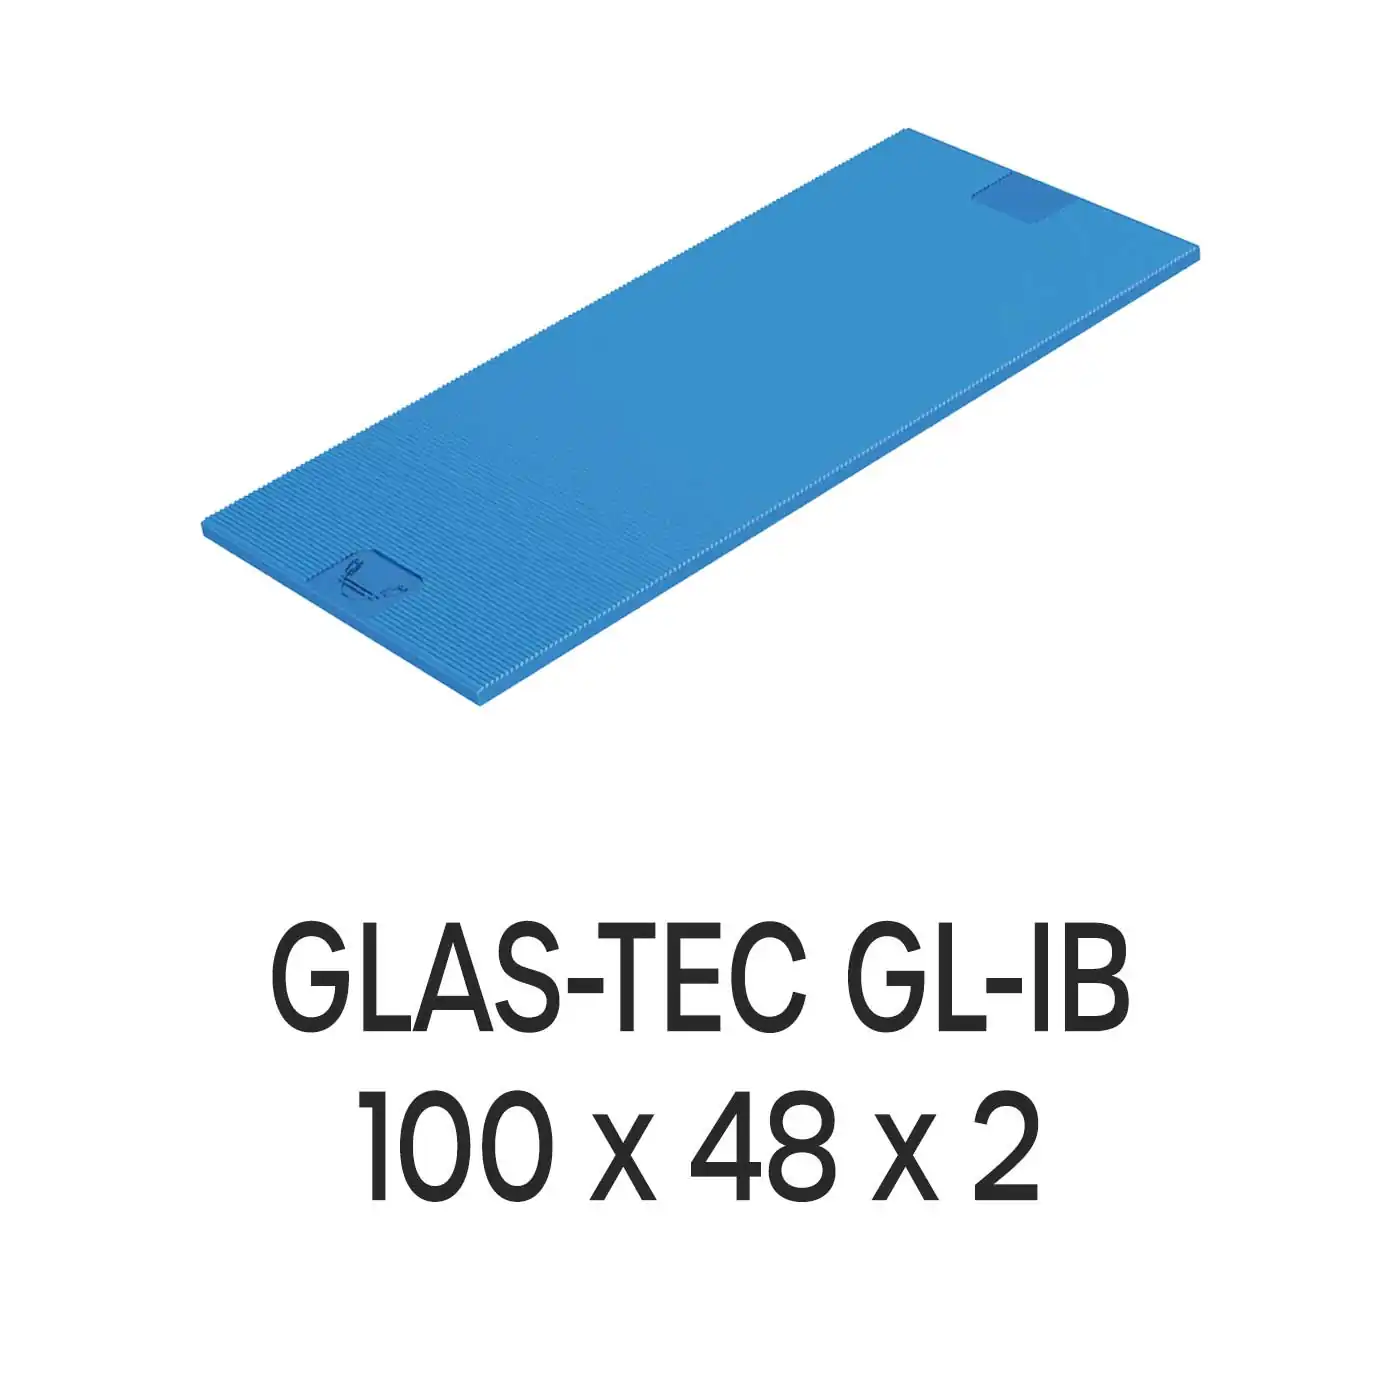 Roto Verglasungsklotz GLAS-TEC GL-IB, 100 x 48 x 2 mm, schwarz, 500 Stück